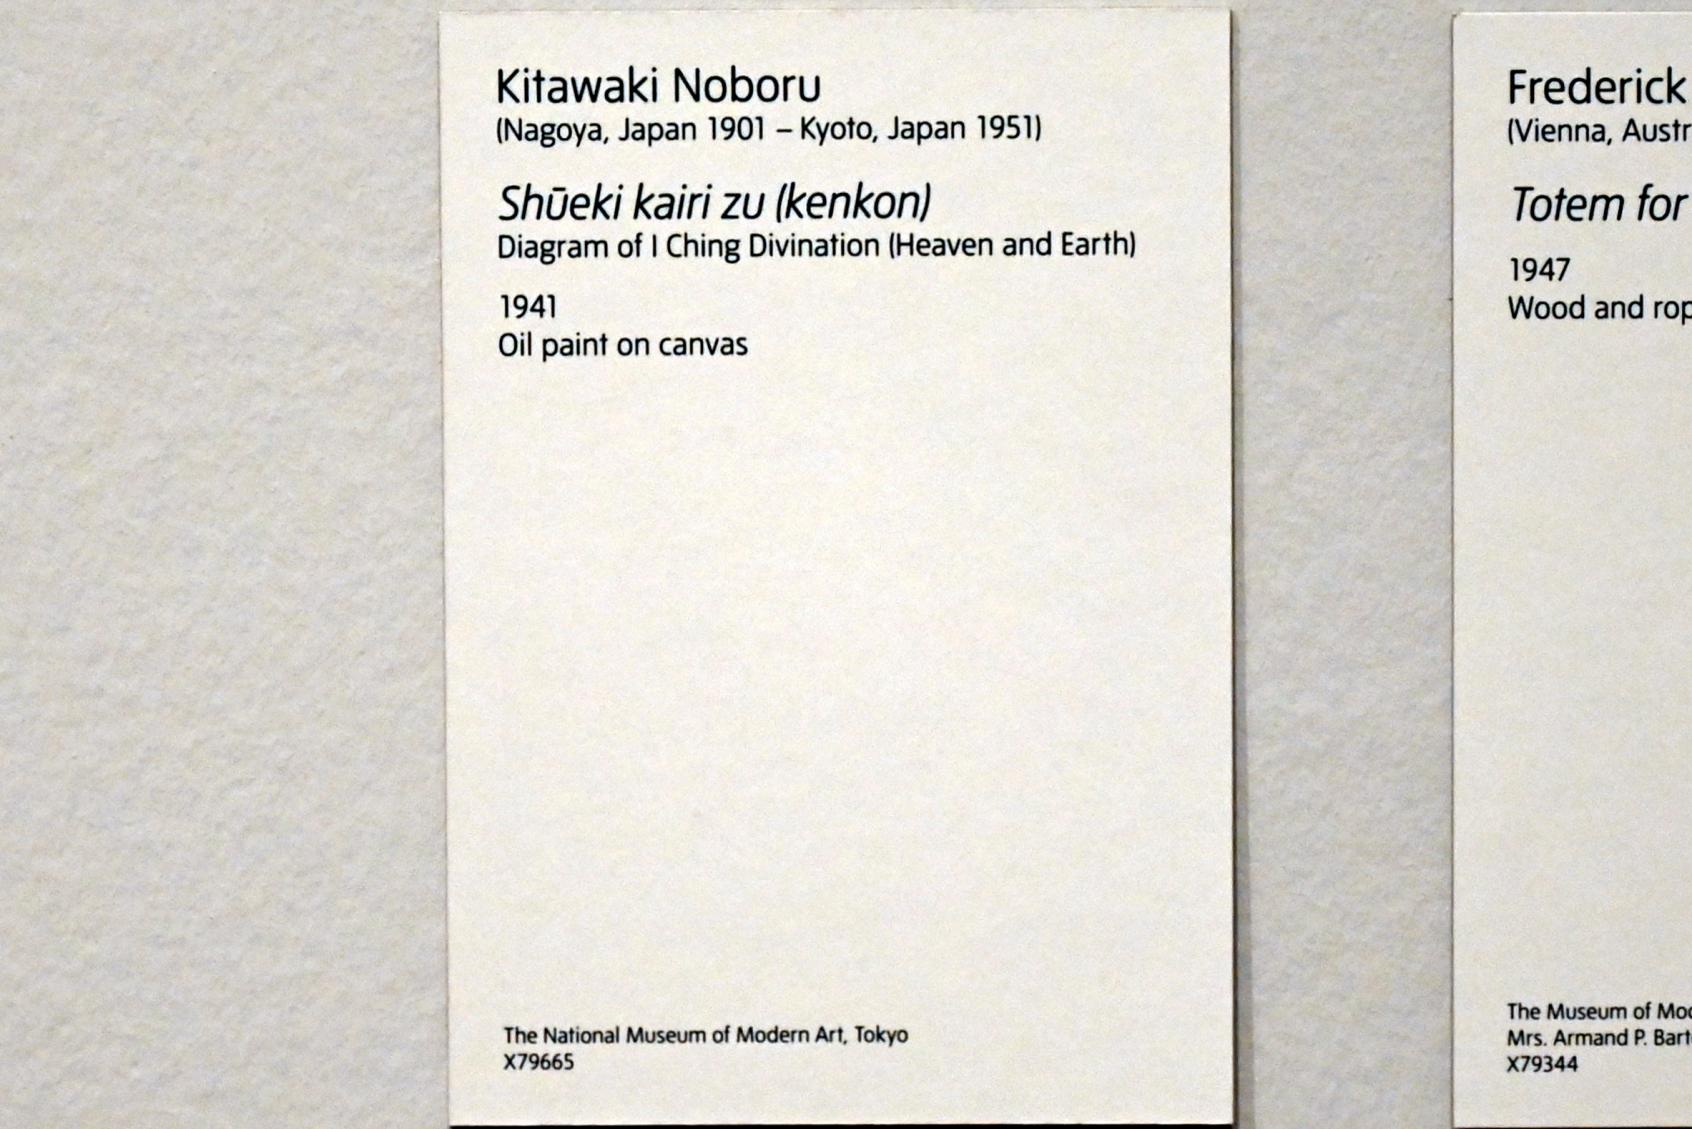 Kitawaki Noboru (1941), Shūeki kairi zu (kenkon) (Diagramm der I Ging Weissagung (Himmel und Erde)), London, Tate Modern, Ausstellung "Surrealism Beyond Borders" vom 24.02.-29.08.2022, Saal 11, 1941